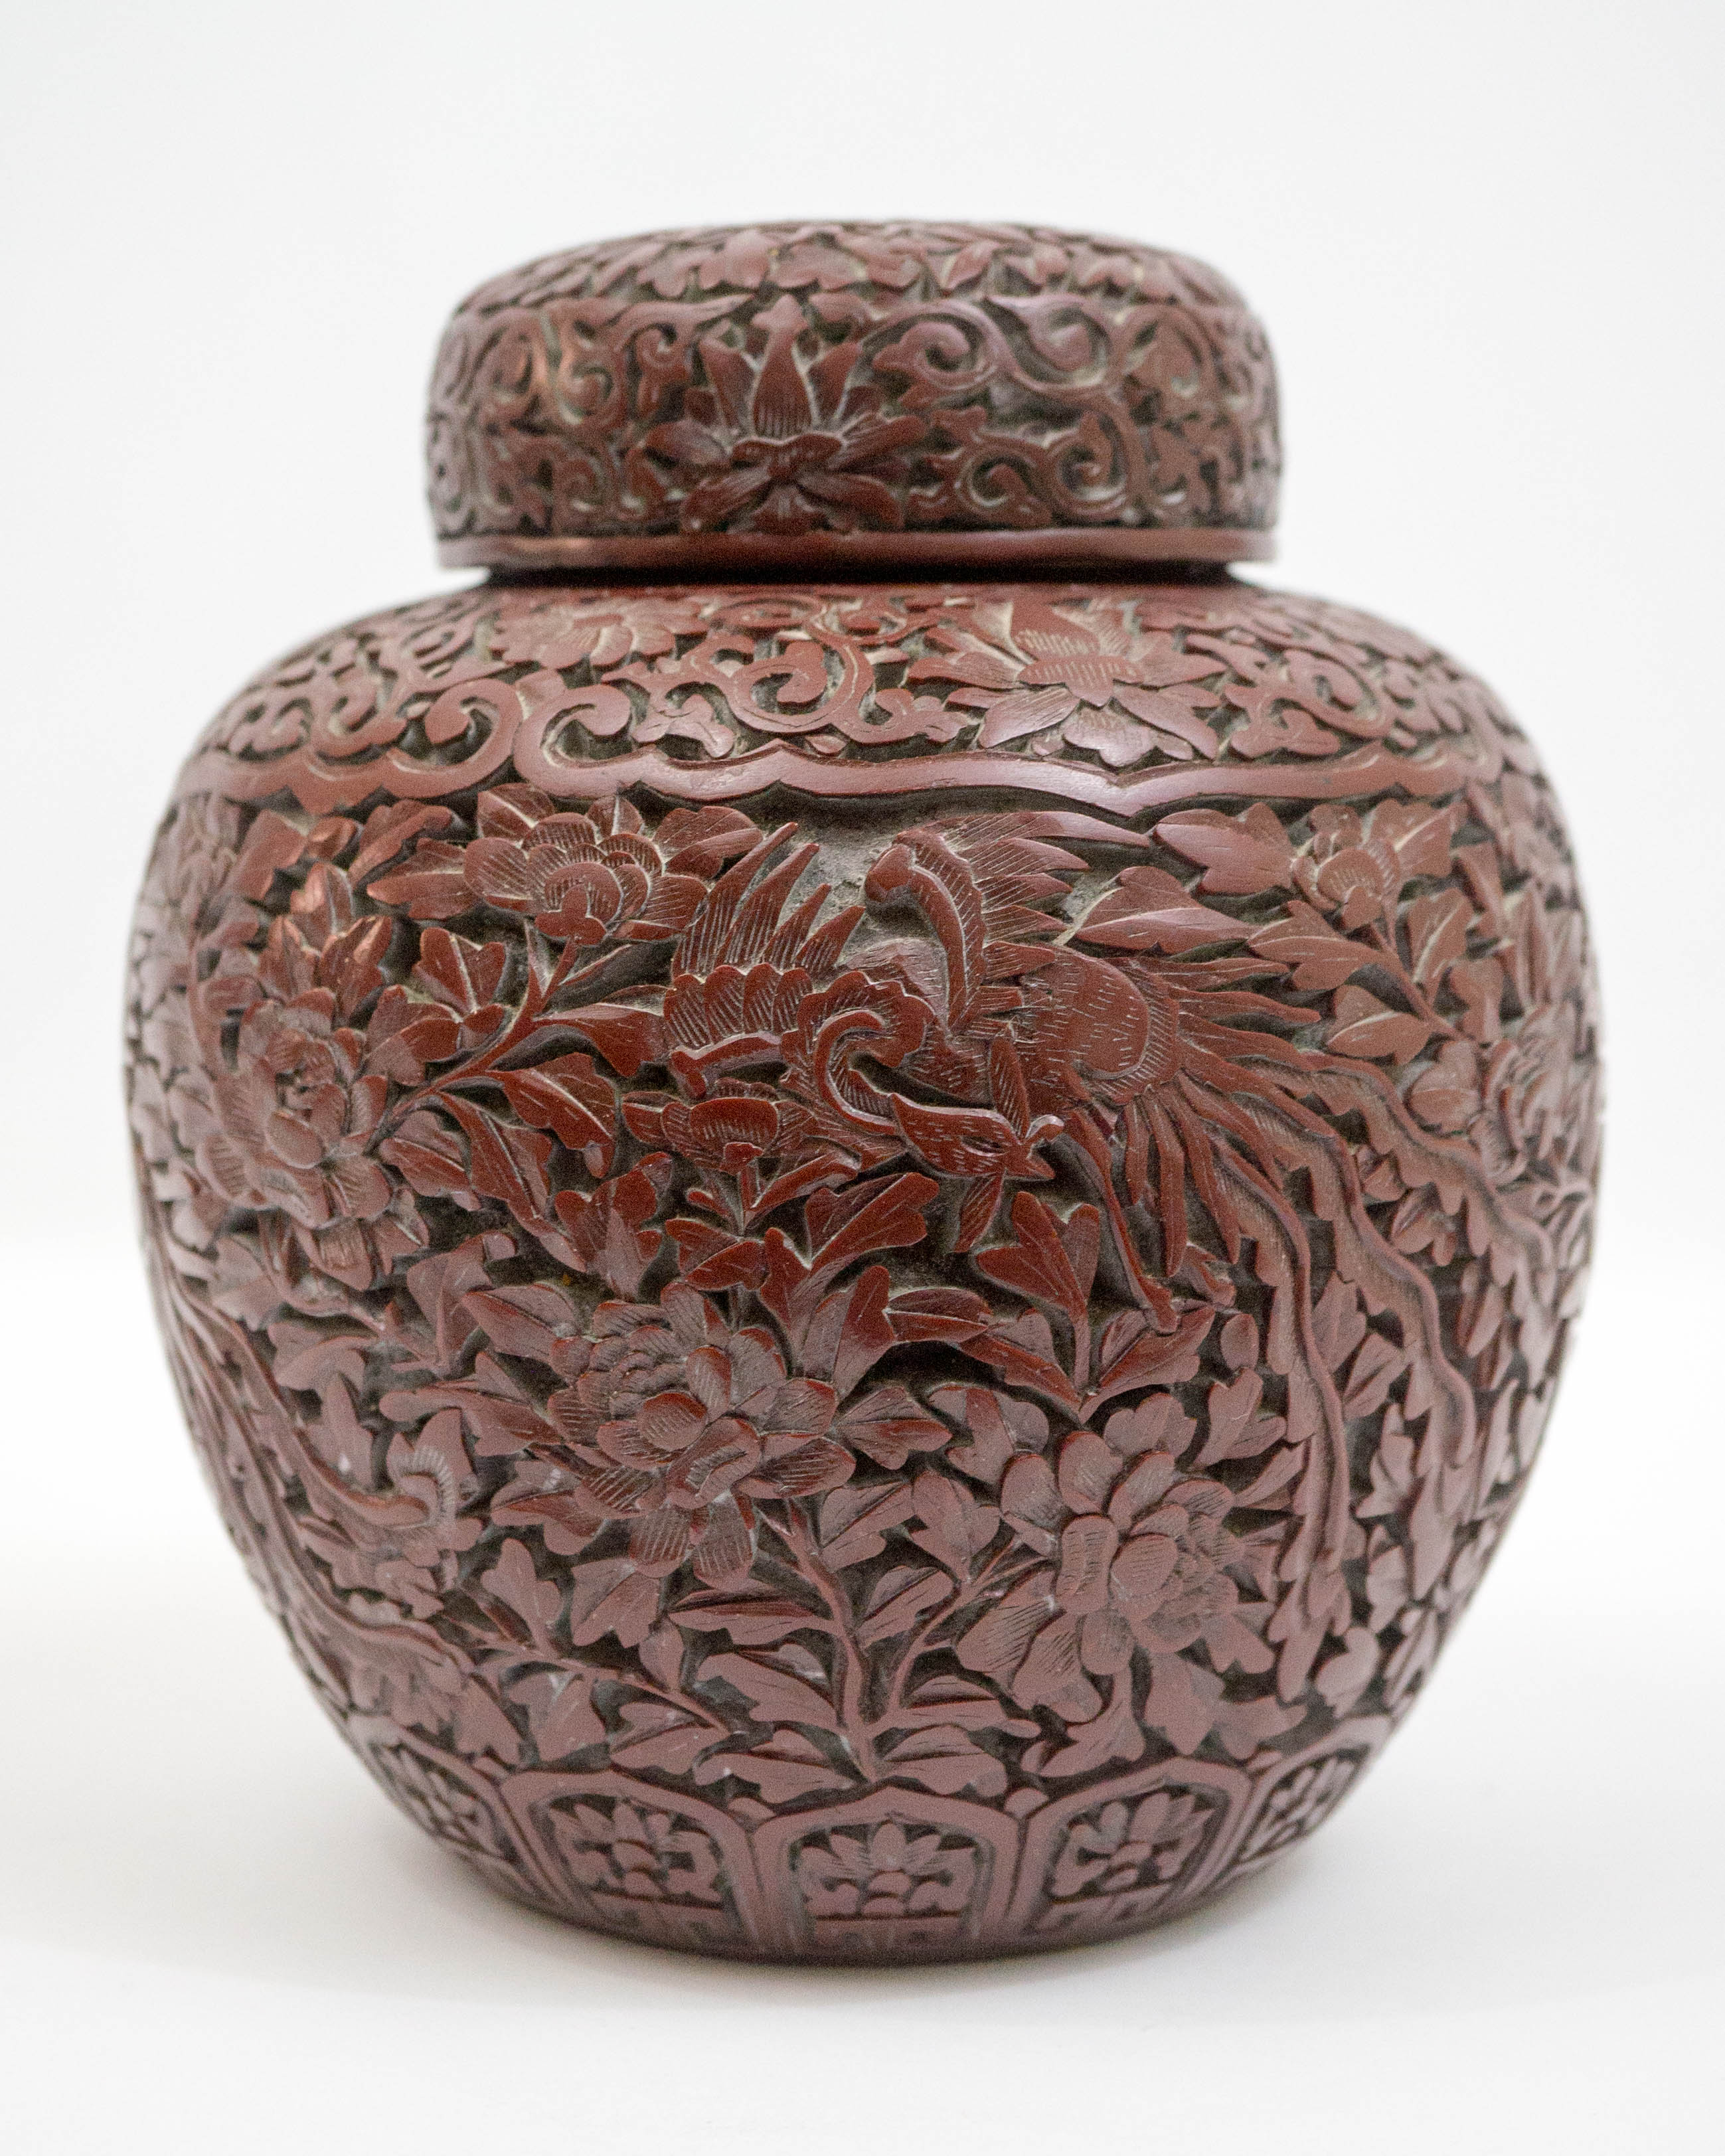 An Old Chinese Cinnabar Jar